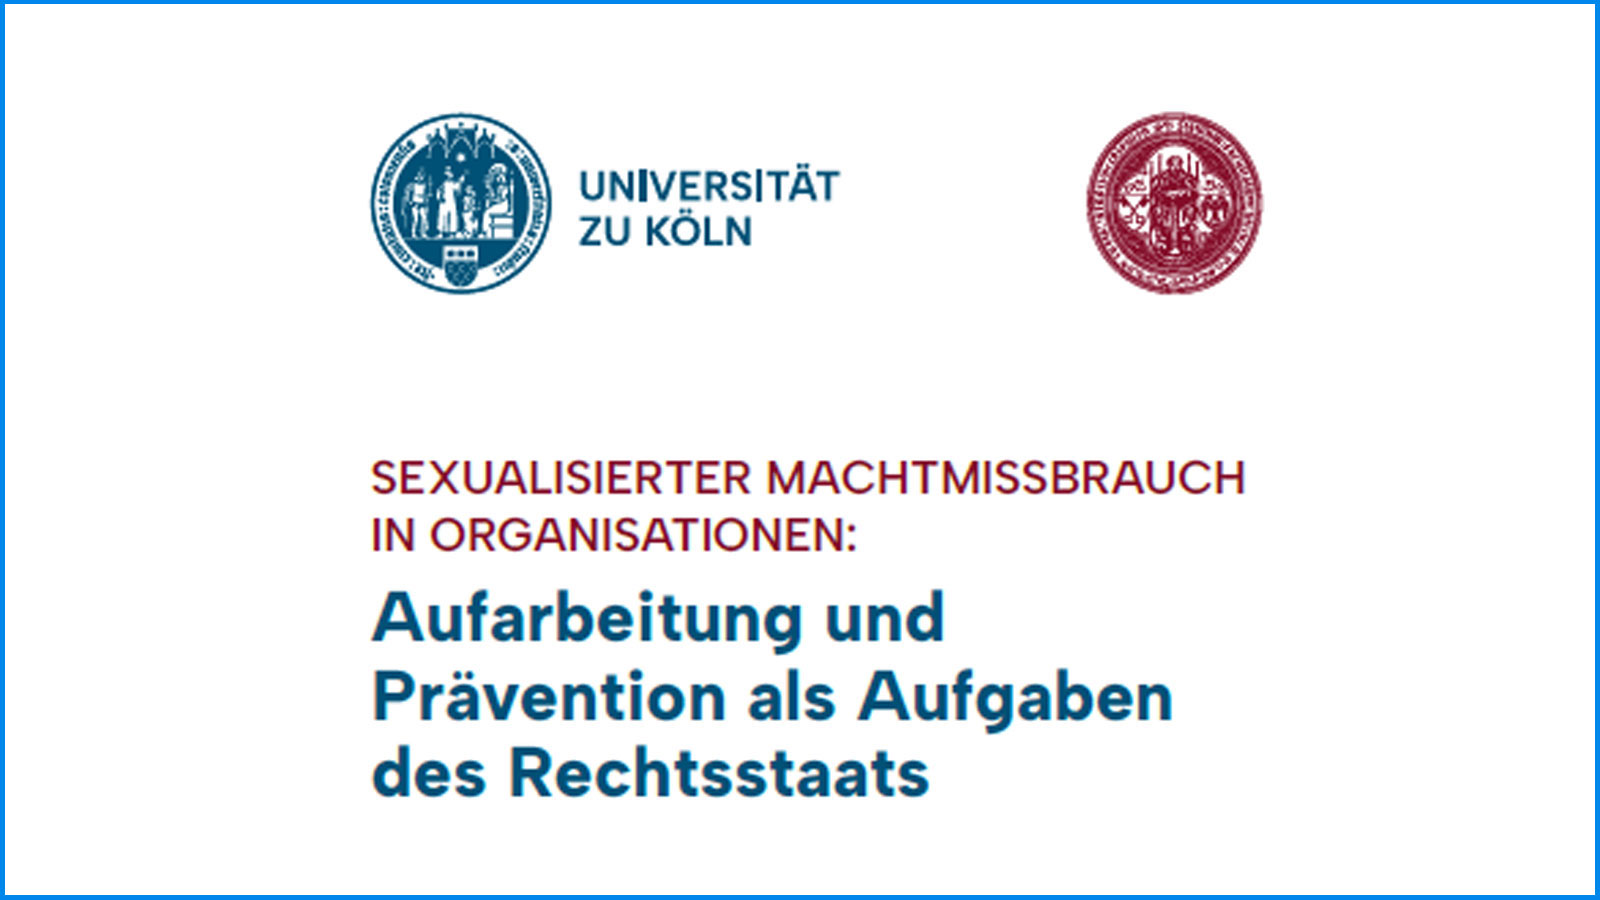 Ein Vorschaubild auf dem zwei Logos sind und das Thema der Fachtagung "Sexualisierter Machtmissbrauch in Organisationen: Aufarbeitung und Prävention als Aufgaben des Rechtsstaats" steht.